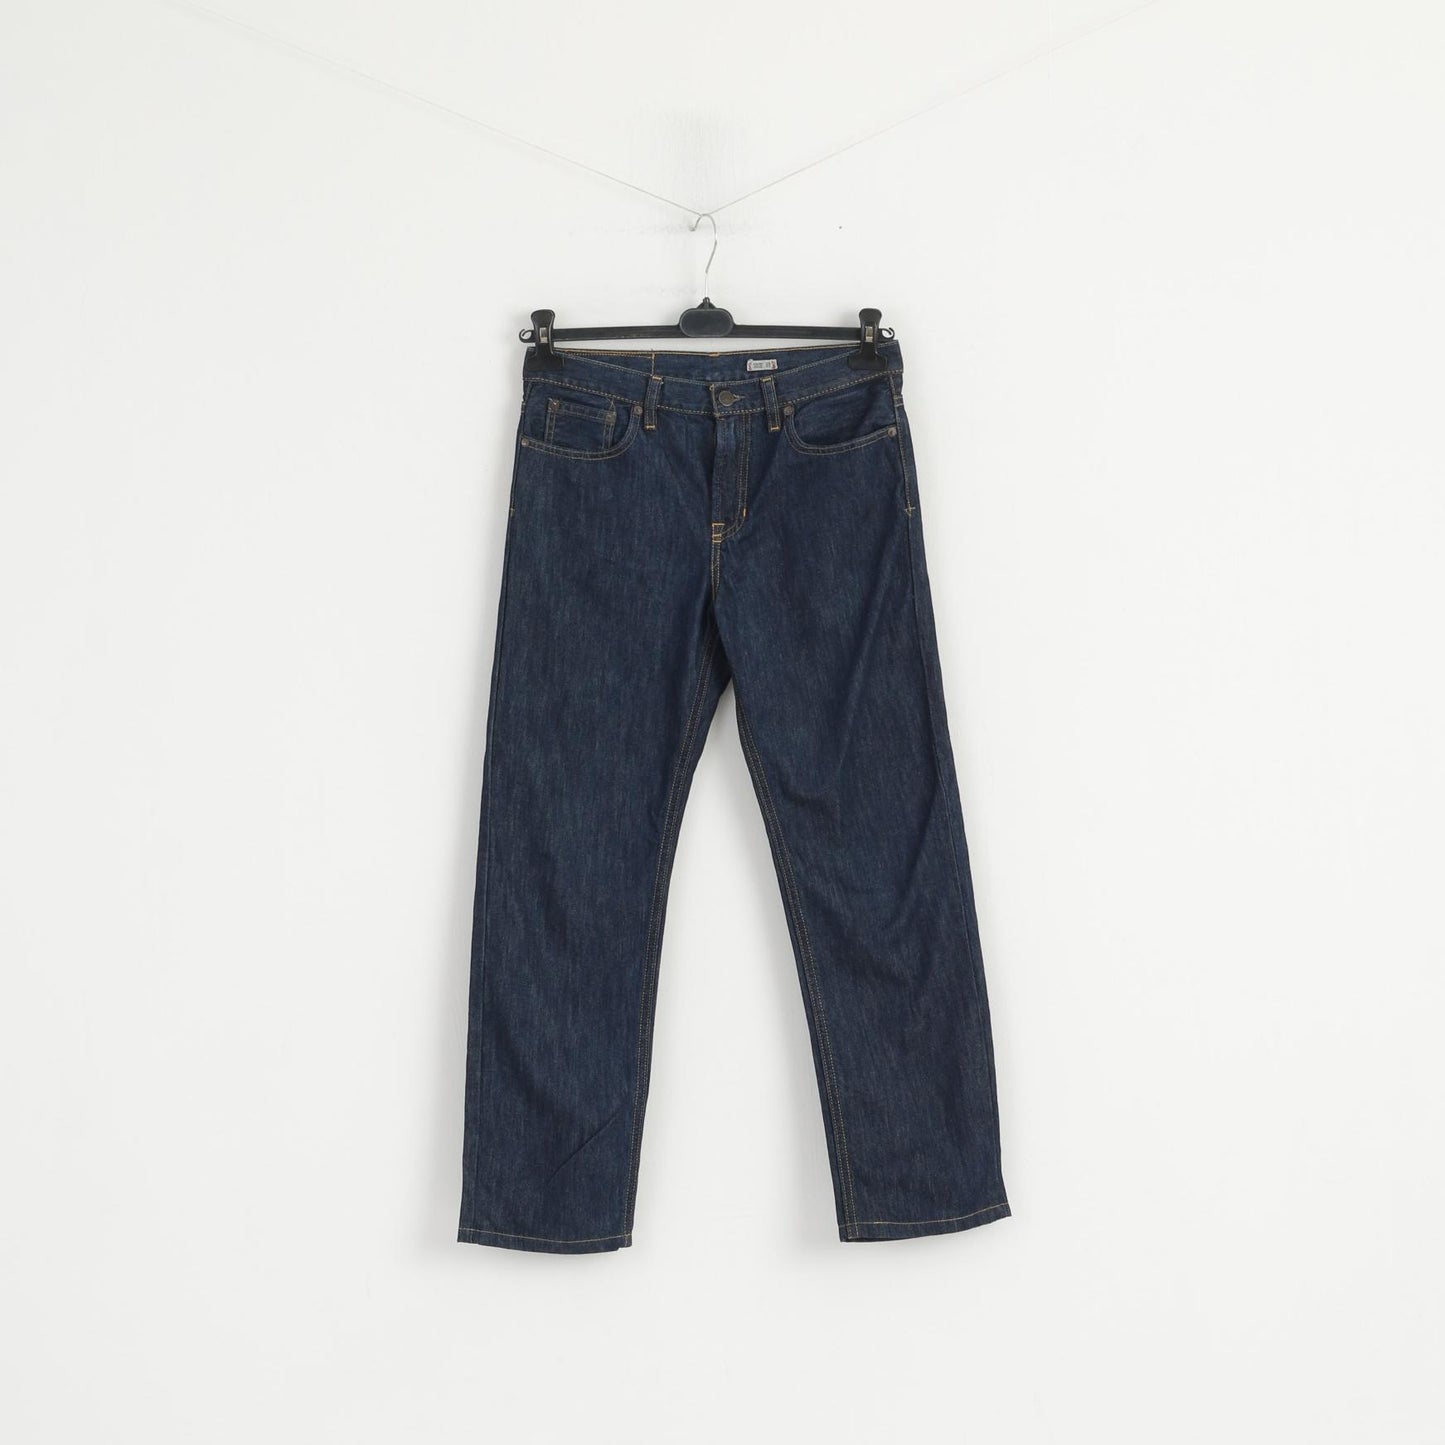 Polo Ralph Lauren Boys 18 Age Jeans Trousers Navy Cotton Vestry Denim Pants